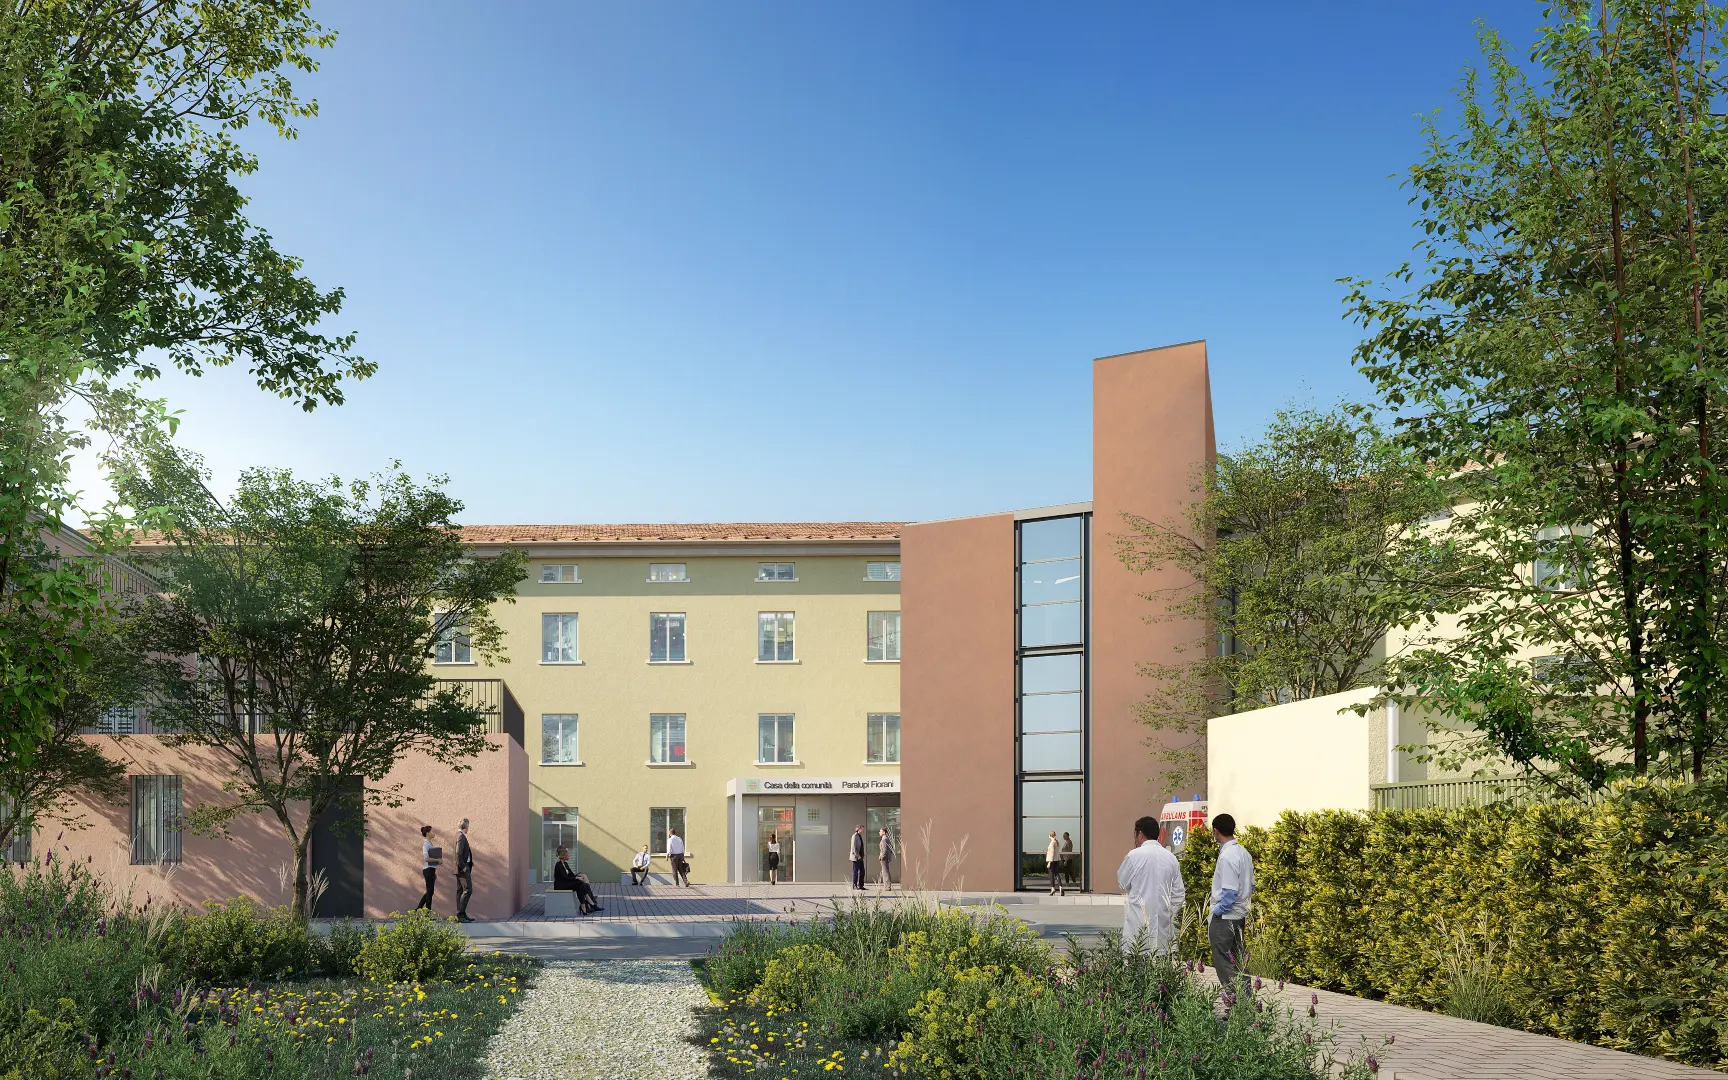 Nuova Casa ed Ospedale della Comunità di Guastalla